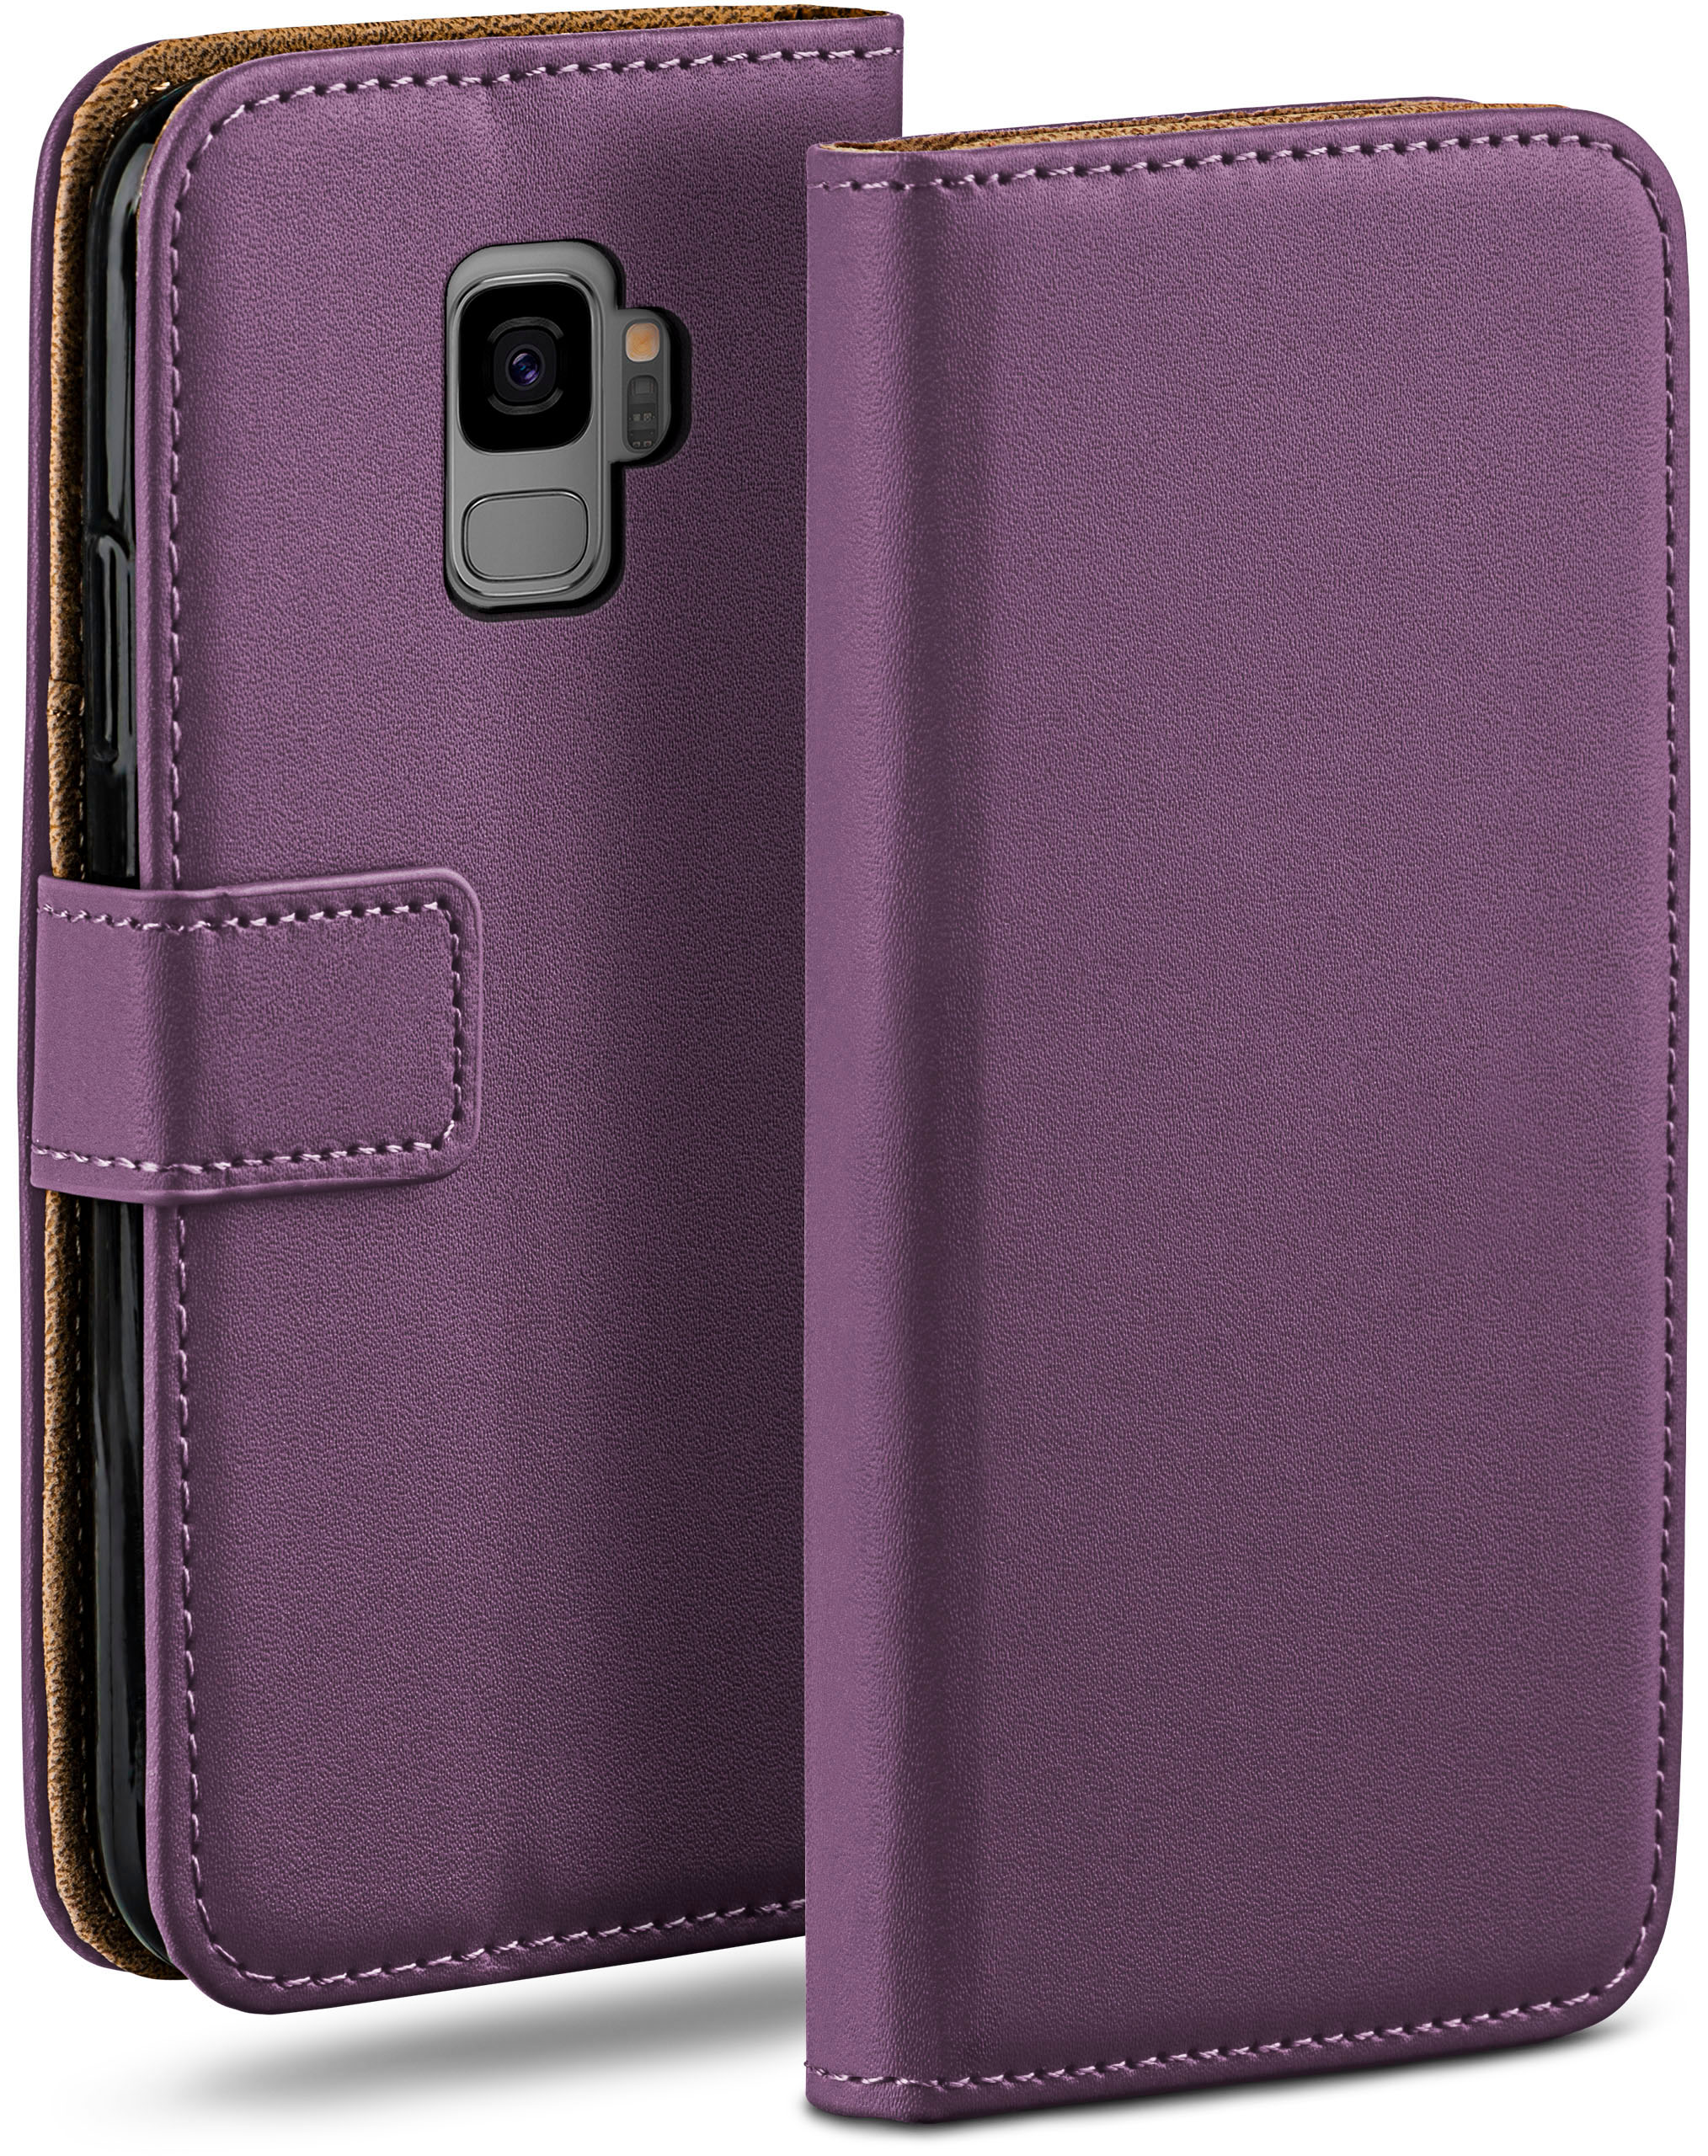 MOEX Book S9, Samsung, Galaxy Case, Bookcover, Indigo-Violet